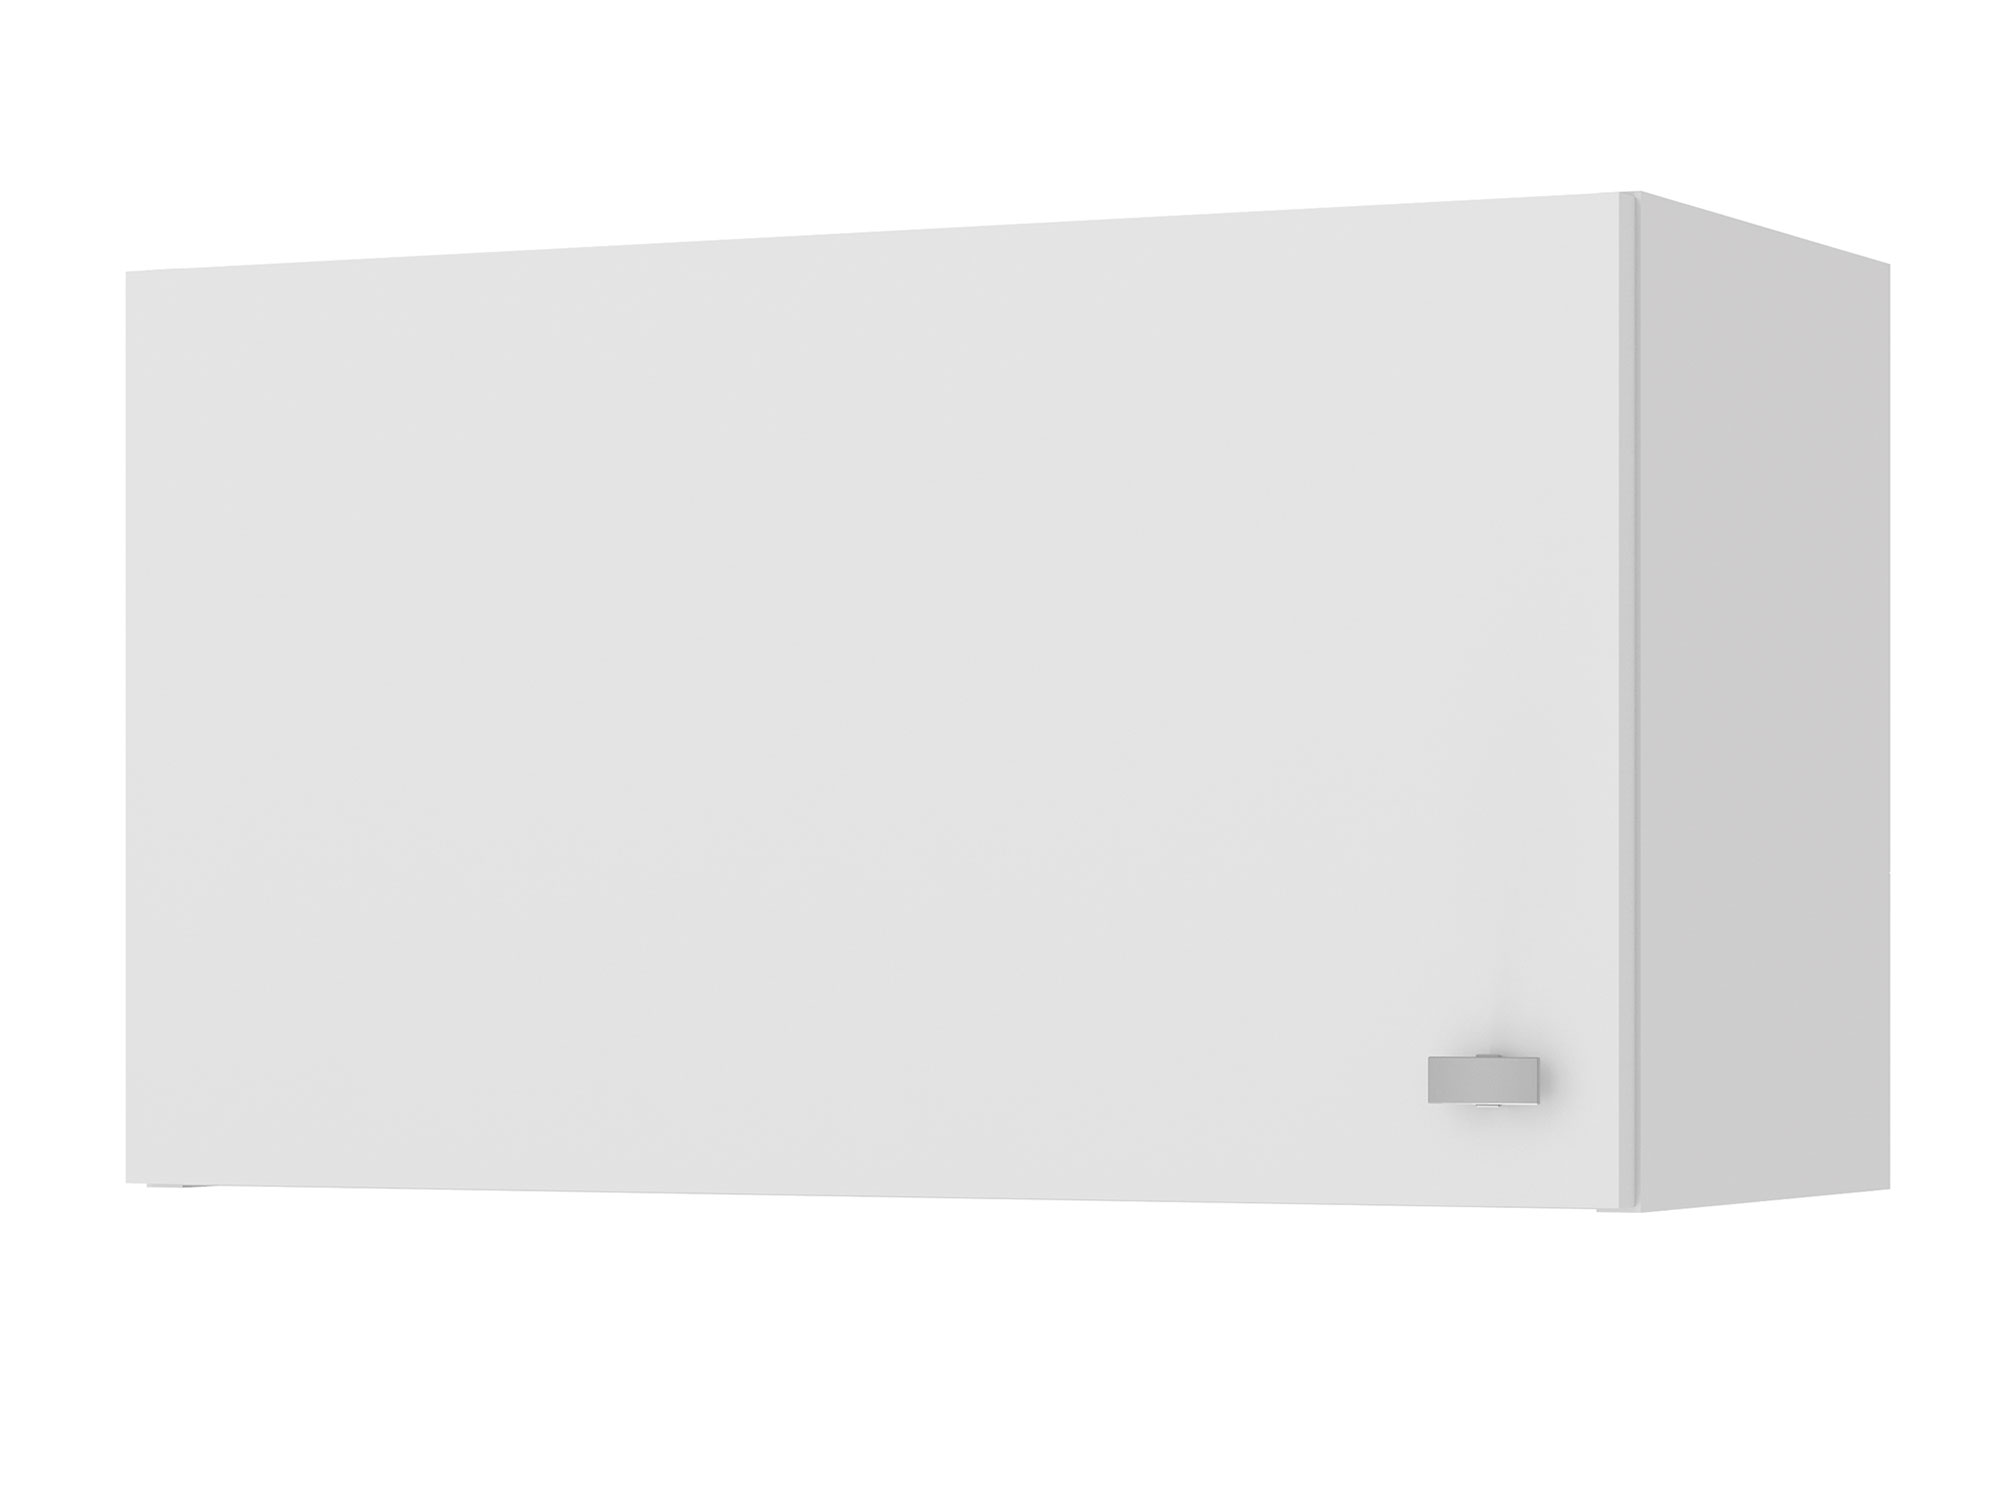 Скай шкаф навесной для вытяжки, 60 см Белый, ЛДСП шкаф навесной для вытяжки alta 60 см дуб филадельфия мокко бежевый